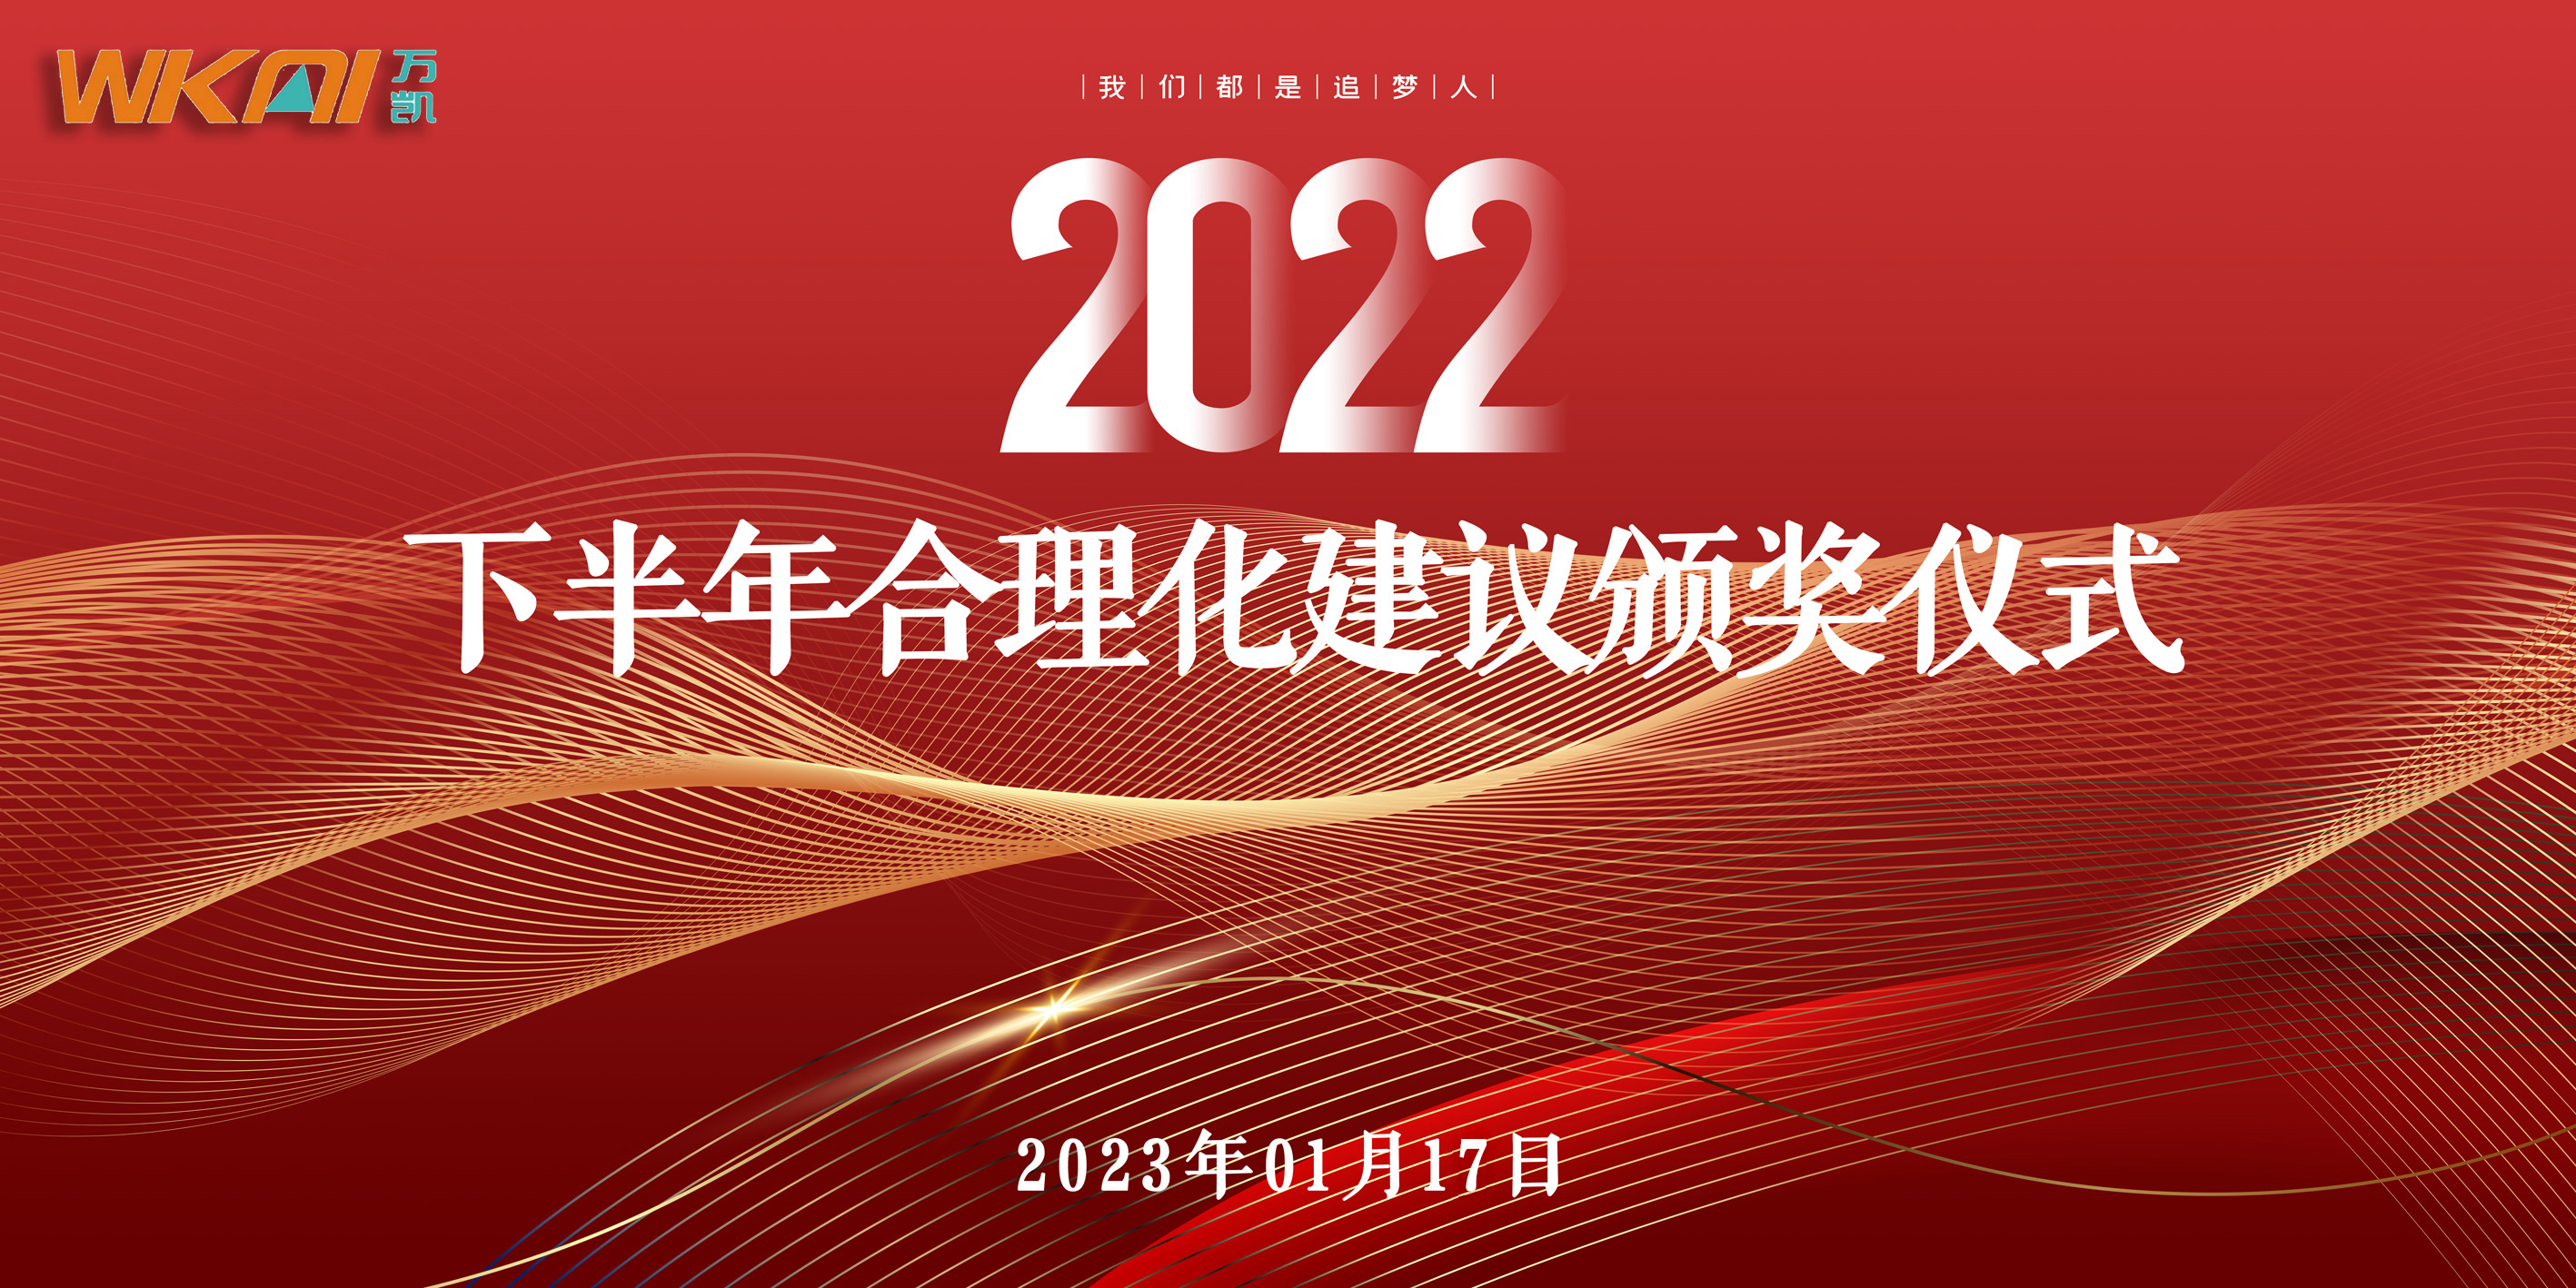 公司举办2022下半年度合理化建议颁奖仪式